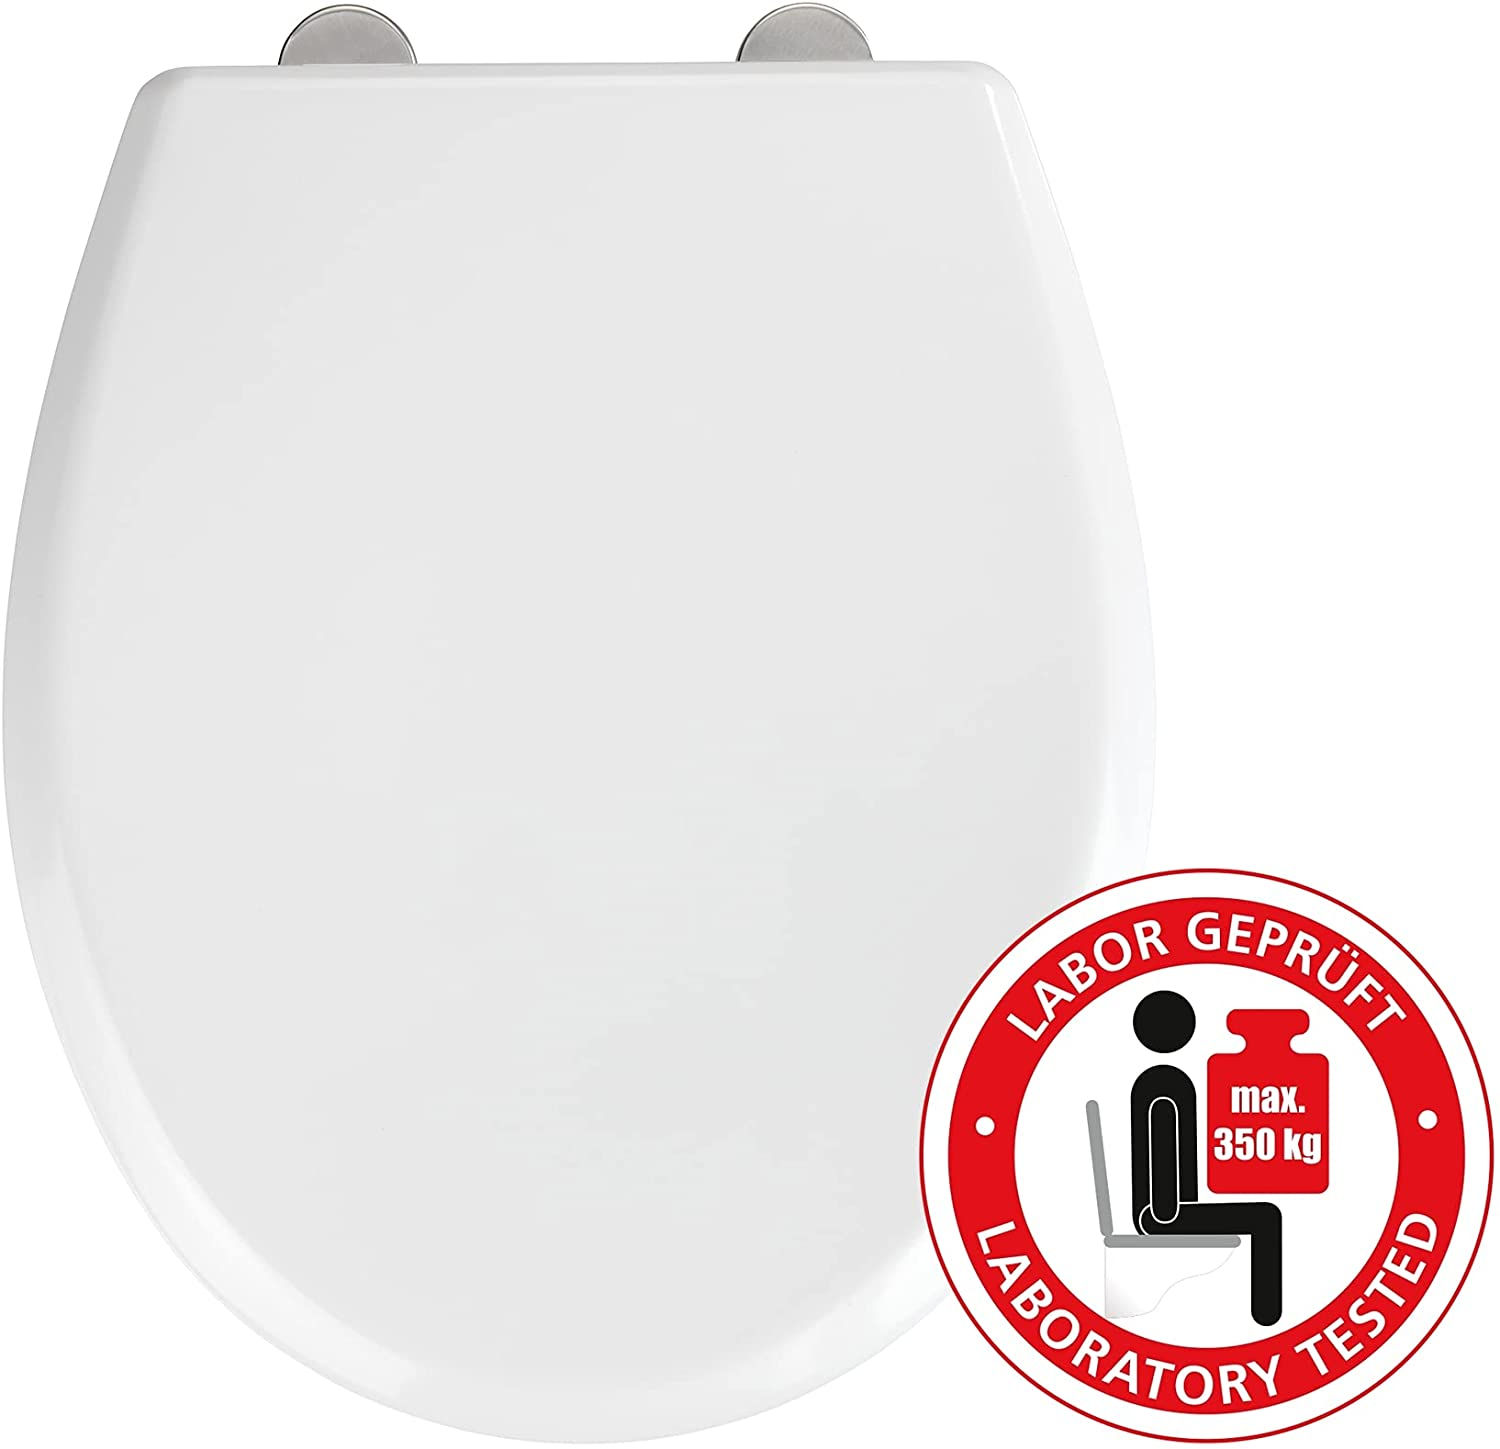 WC-Sitz Gubbio, hygienischer Toilettensitz mit Absenkautomatik, stabiler WC-Deckel bis 350 kg belastbar, mit Fix-Clip Befestigung, aus antibakteriellem Duroplast, Weiß